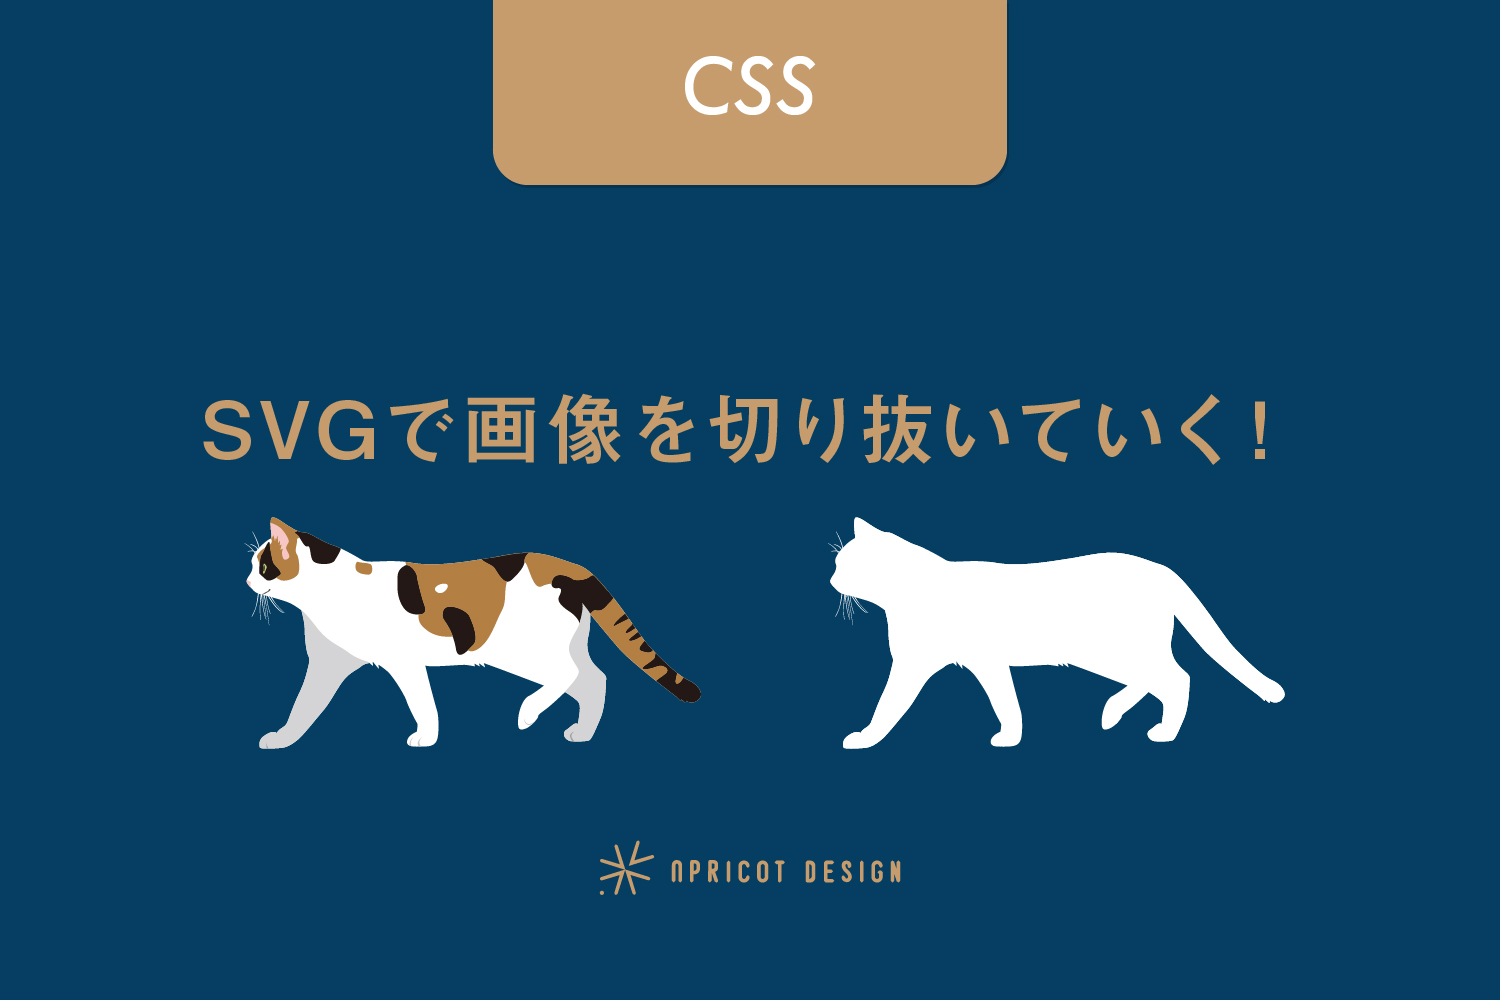 【CSS】SVGで画像を切り抜いていく！